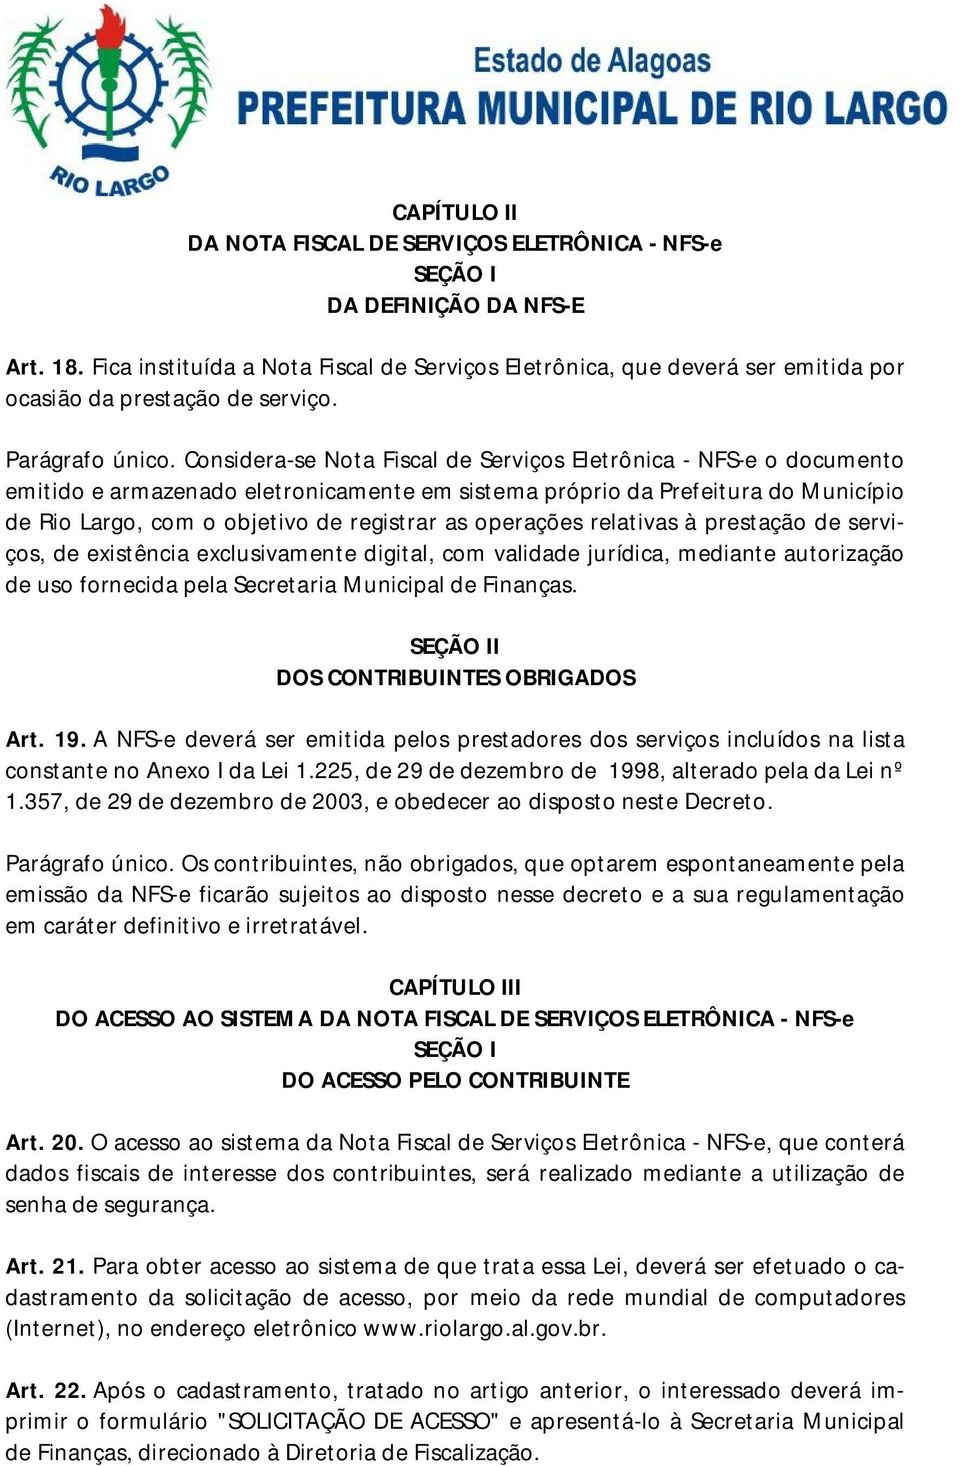 Considera-se Nota Fiscal de Serviços Eletrônica - NFS-e o documento emitido e armazenado eletronicamente em sistema próprio da Prefeitura do Município de Rio Largo, com o objetivo de registrar as